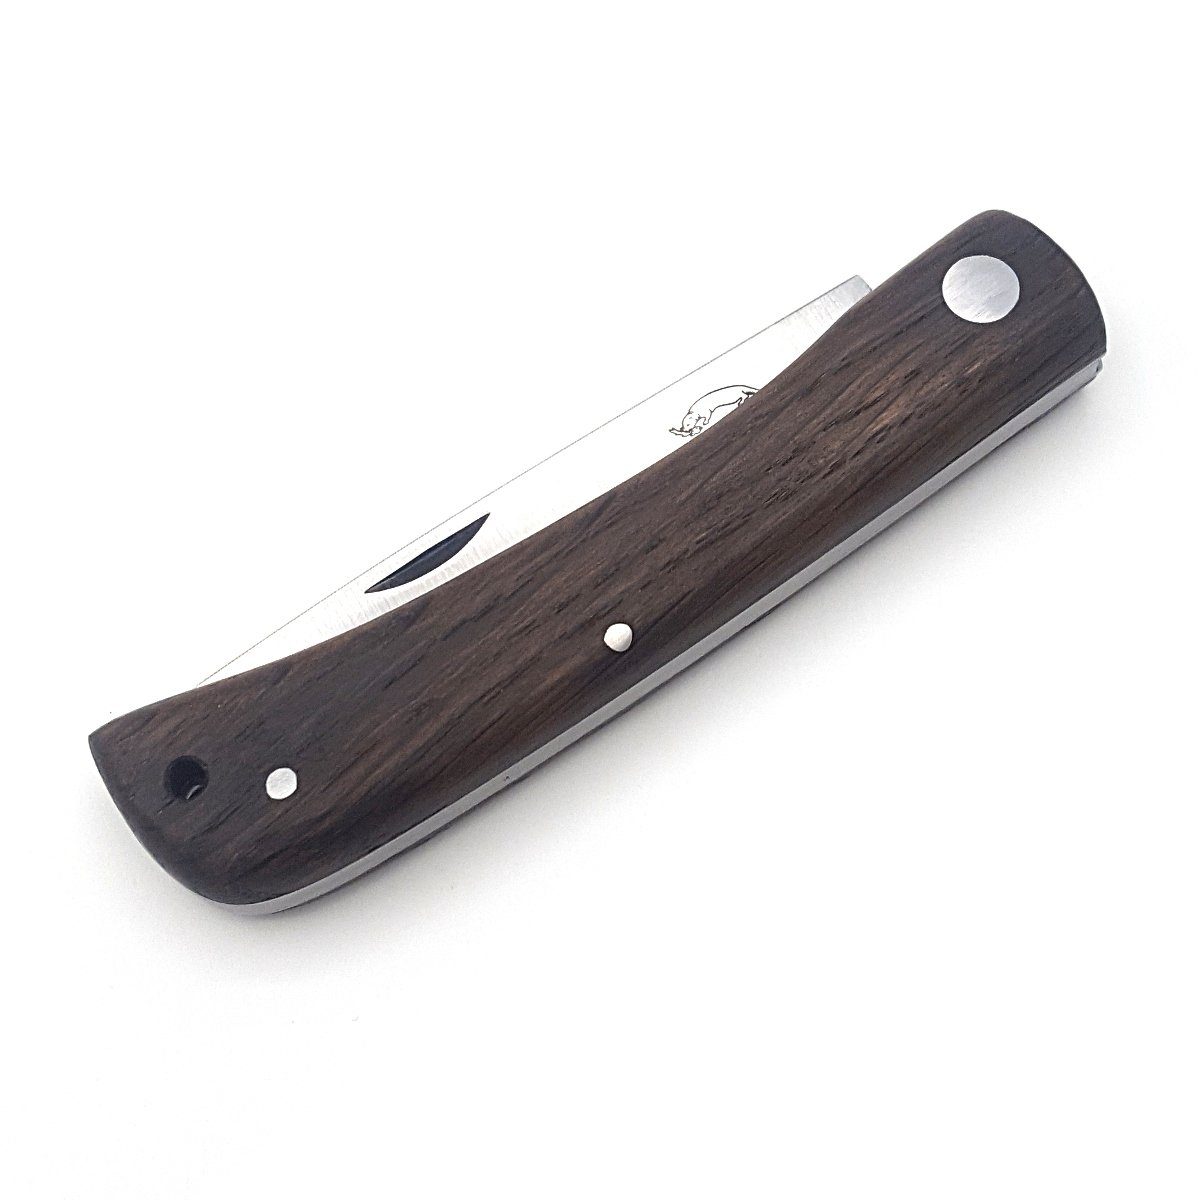 Otter Messer Taschenmesser Hippekniep Slipjoint mit groß Carbonstahl, Räuchereiche Lederband, Klinge